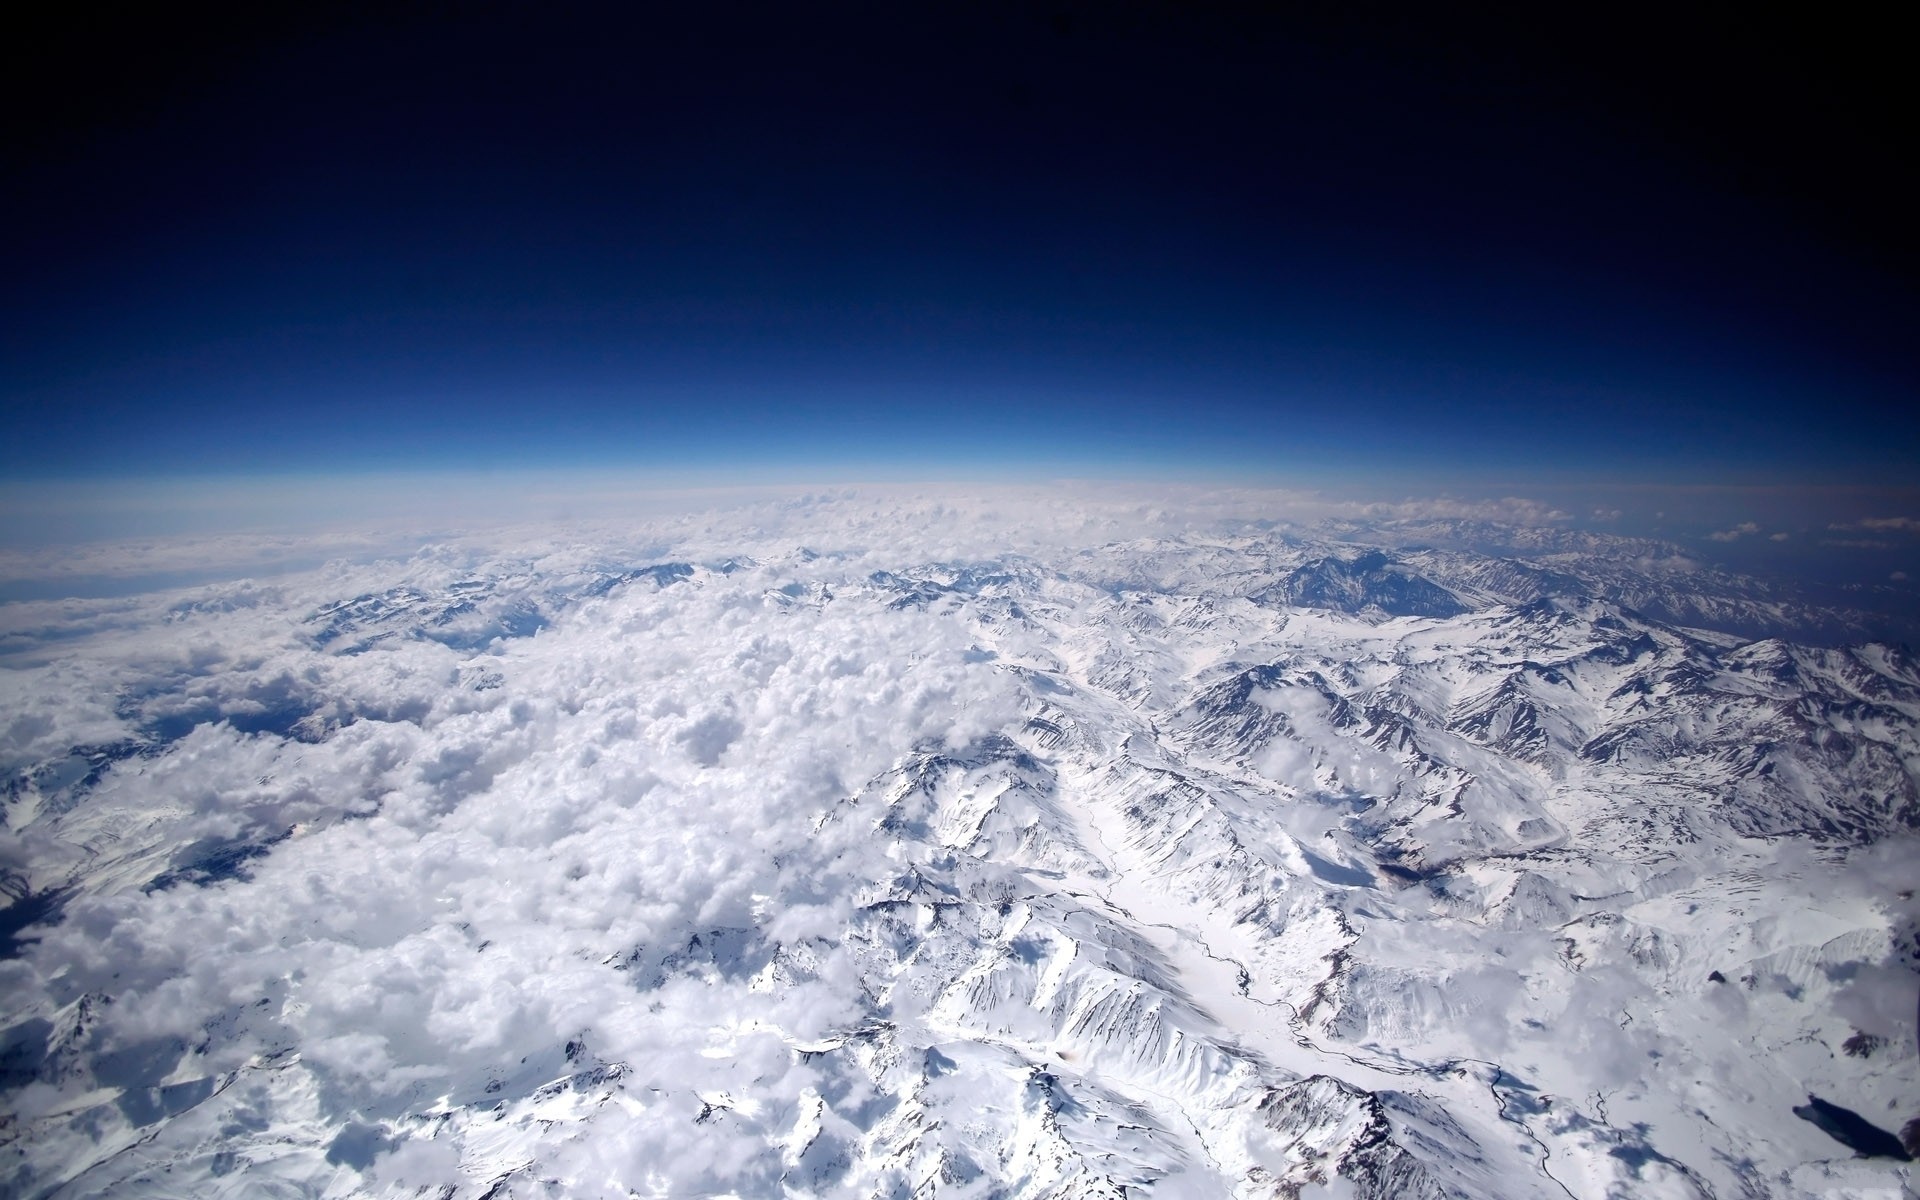 Скачать обои бесплатно Космос, Облака, Снег, Горизонт, Гора, Фотографии, Воздушный картинка на рабочий стол ПК